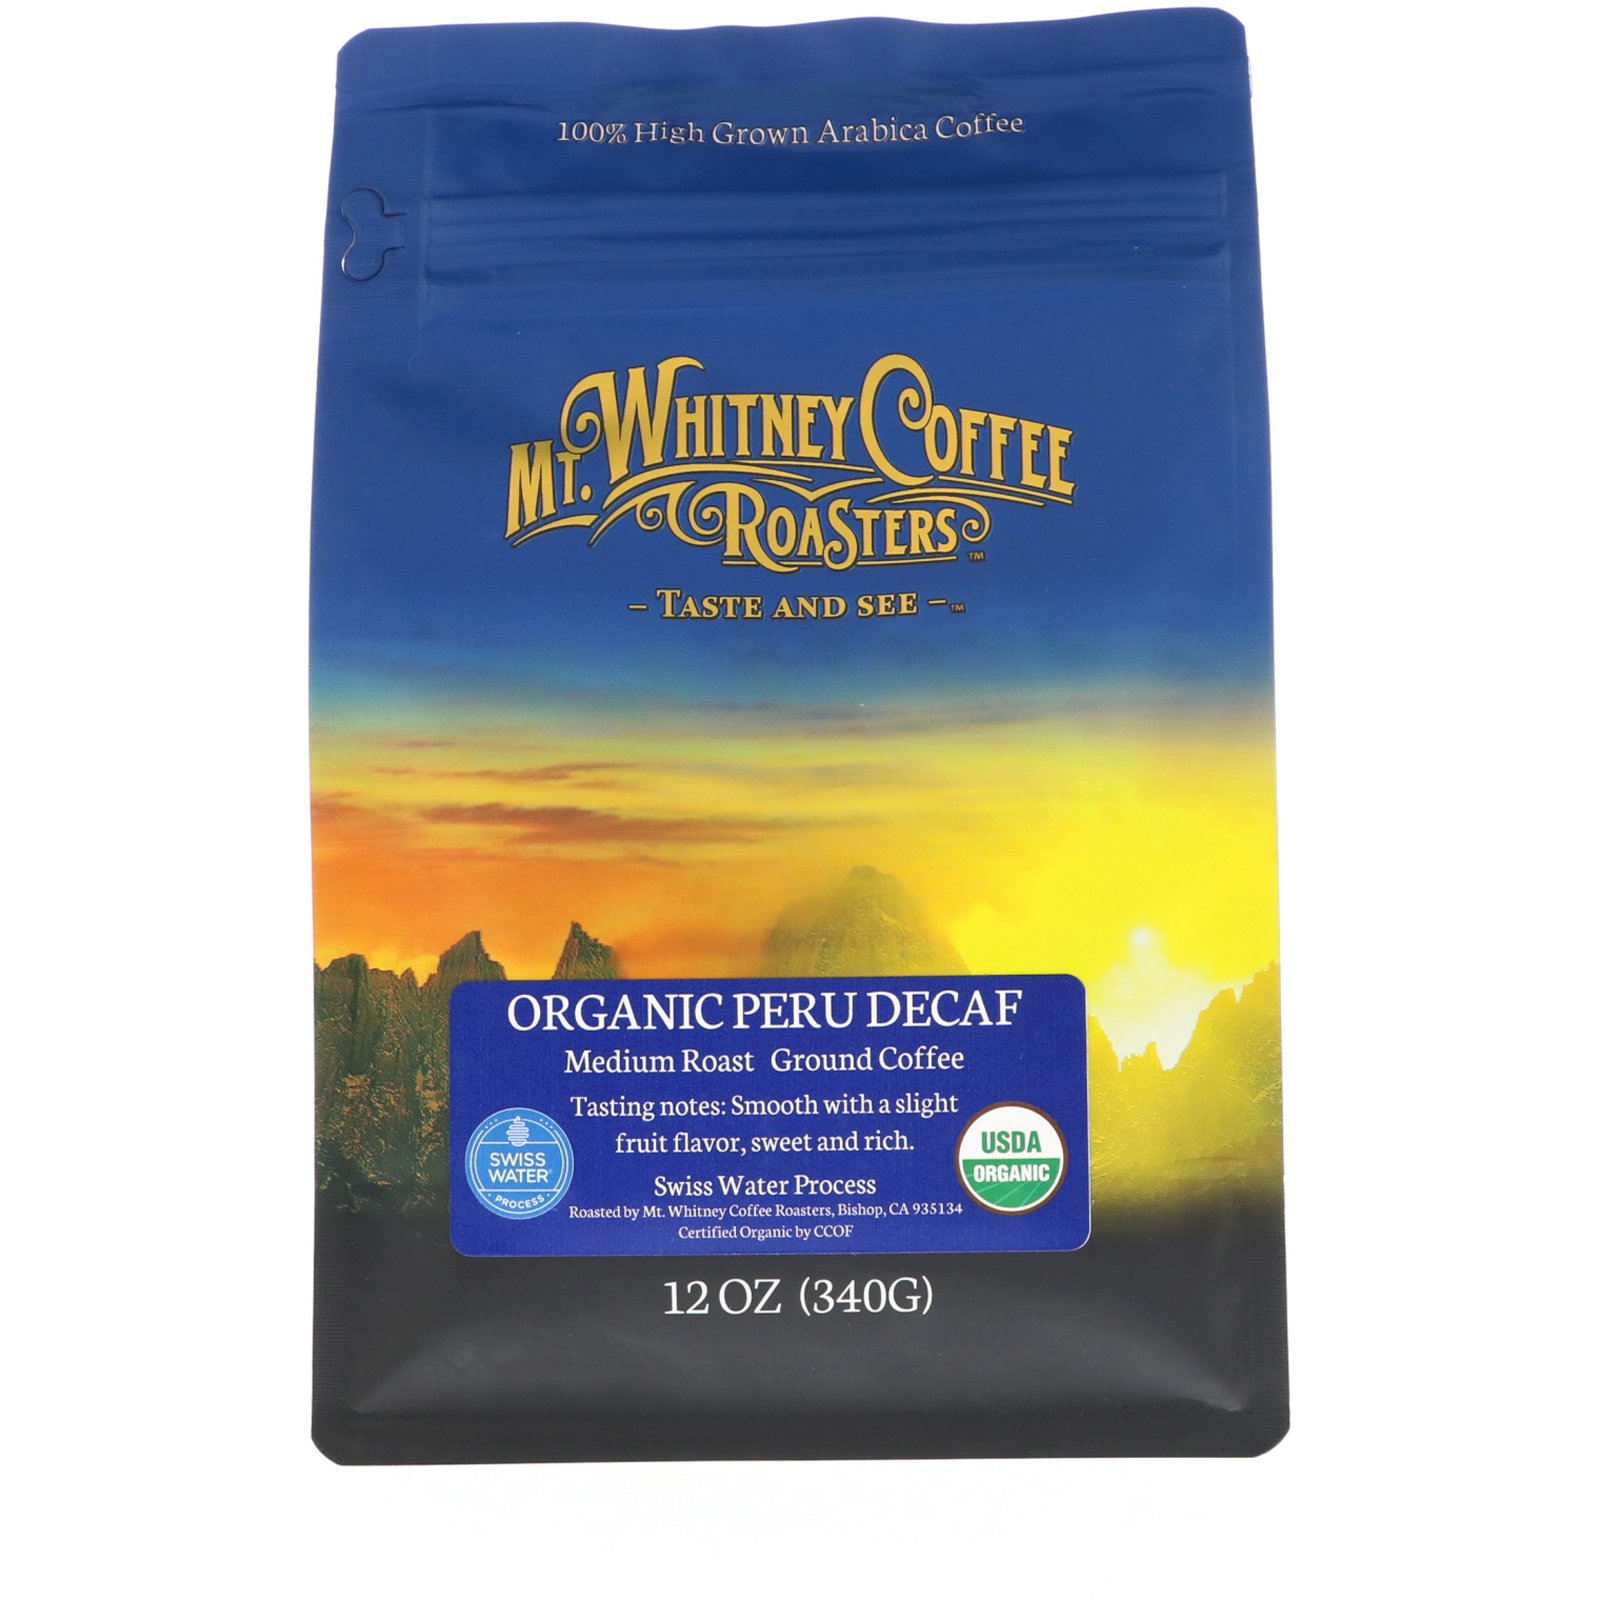 Mt. Whitney Coffee Roasters オーガニック ペルー デカフェ  マウントホイットニーコーヒーロースター ミディアムロースト グラウンドコーヒー アラビカコーヒー100% 340g